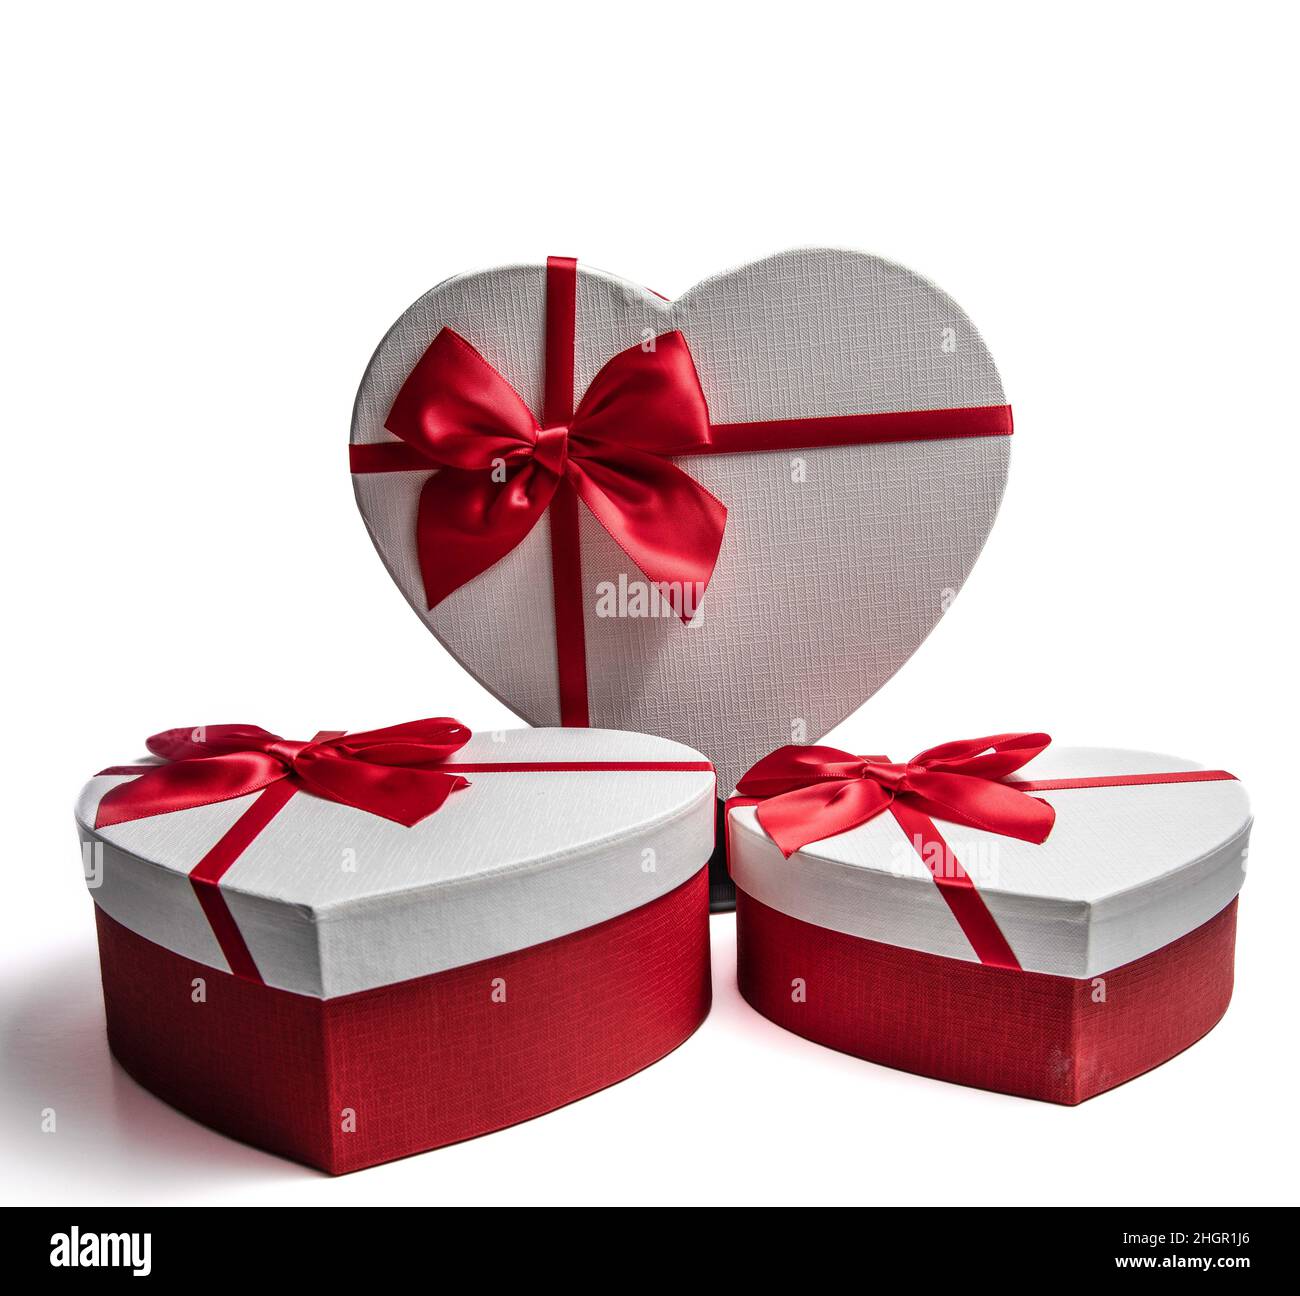 Set de 3 cajas de regalo corazón con lazo, 3 tamaños distintos